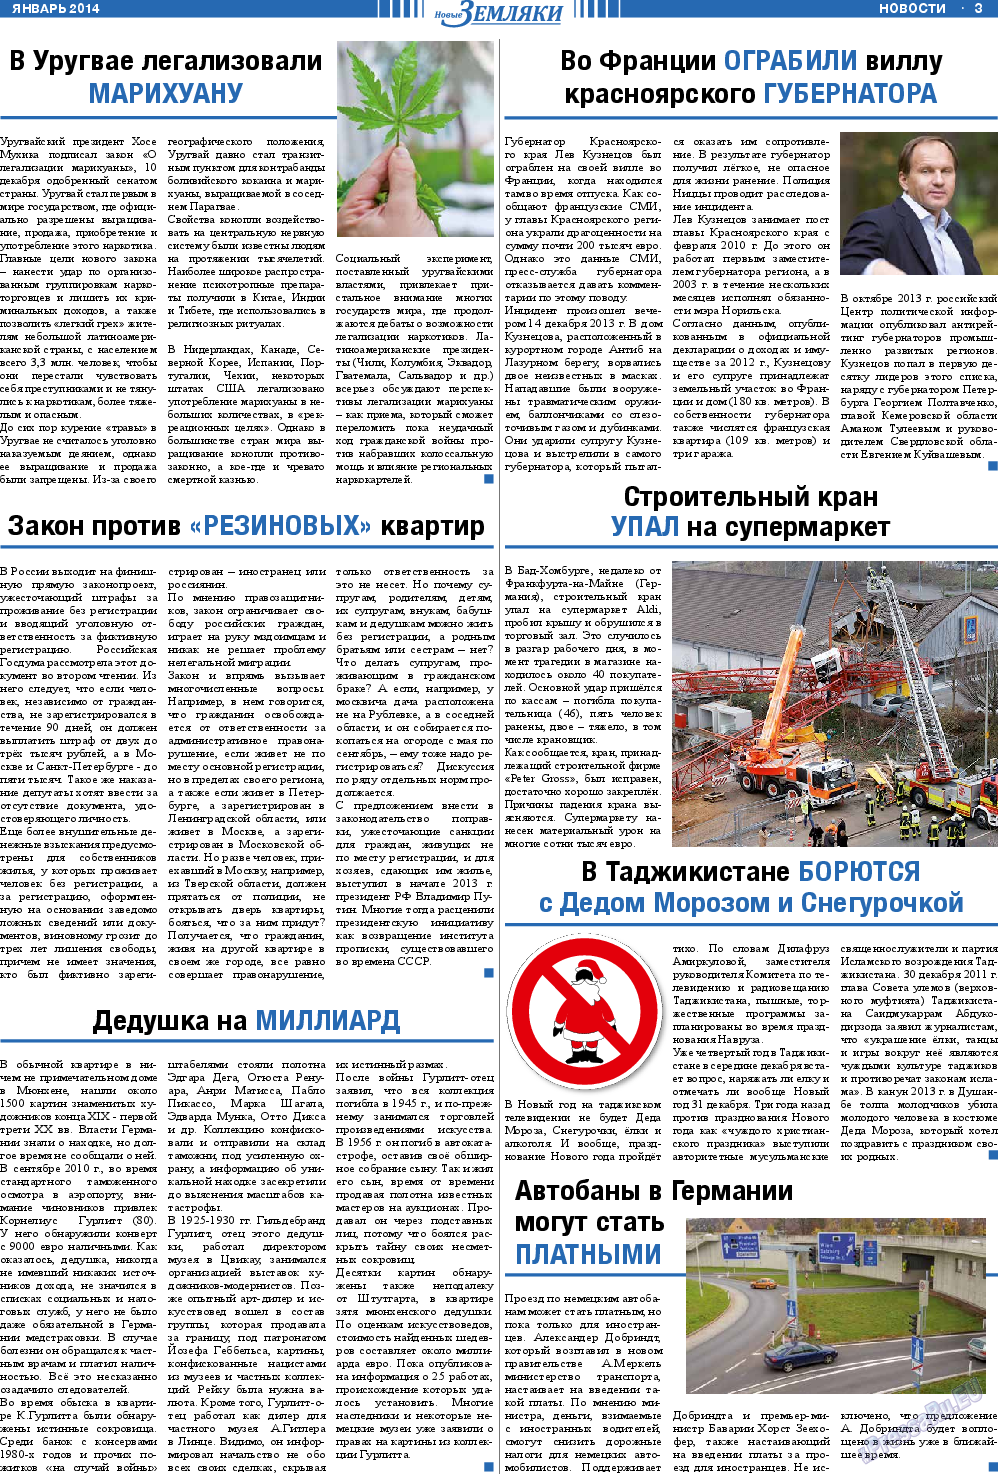 Новые Земляки (газета). 2014 год, номер 1, стр. 3